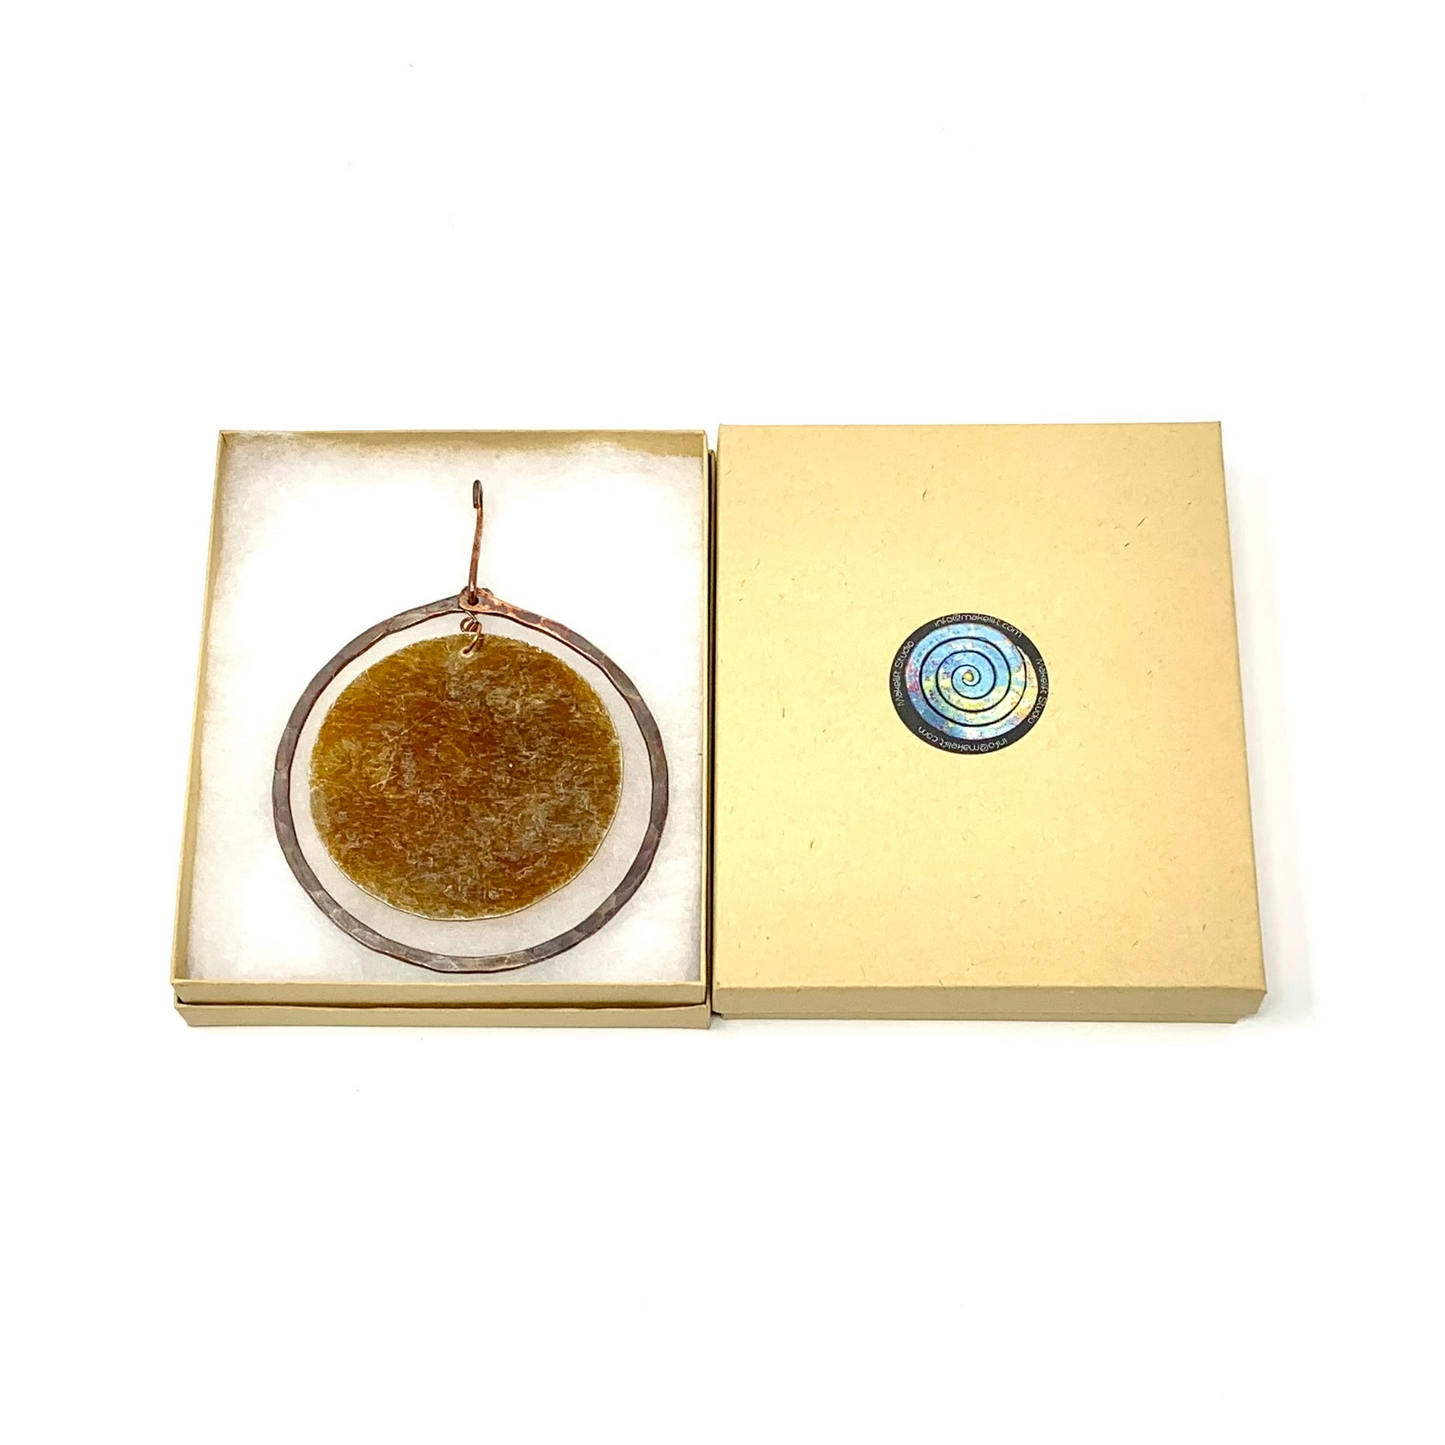 Copper/Mica Circle Ornament in gift box